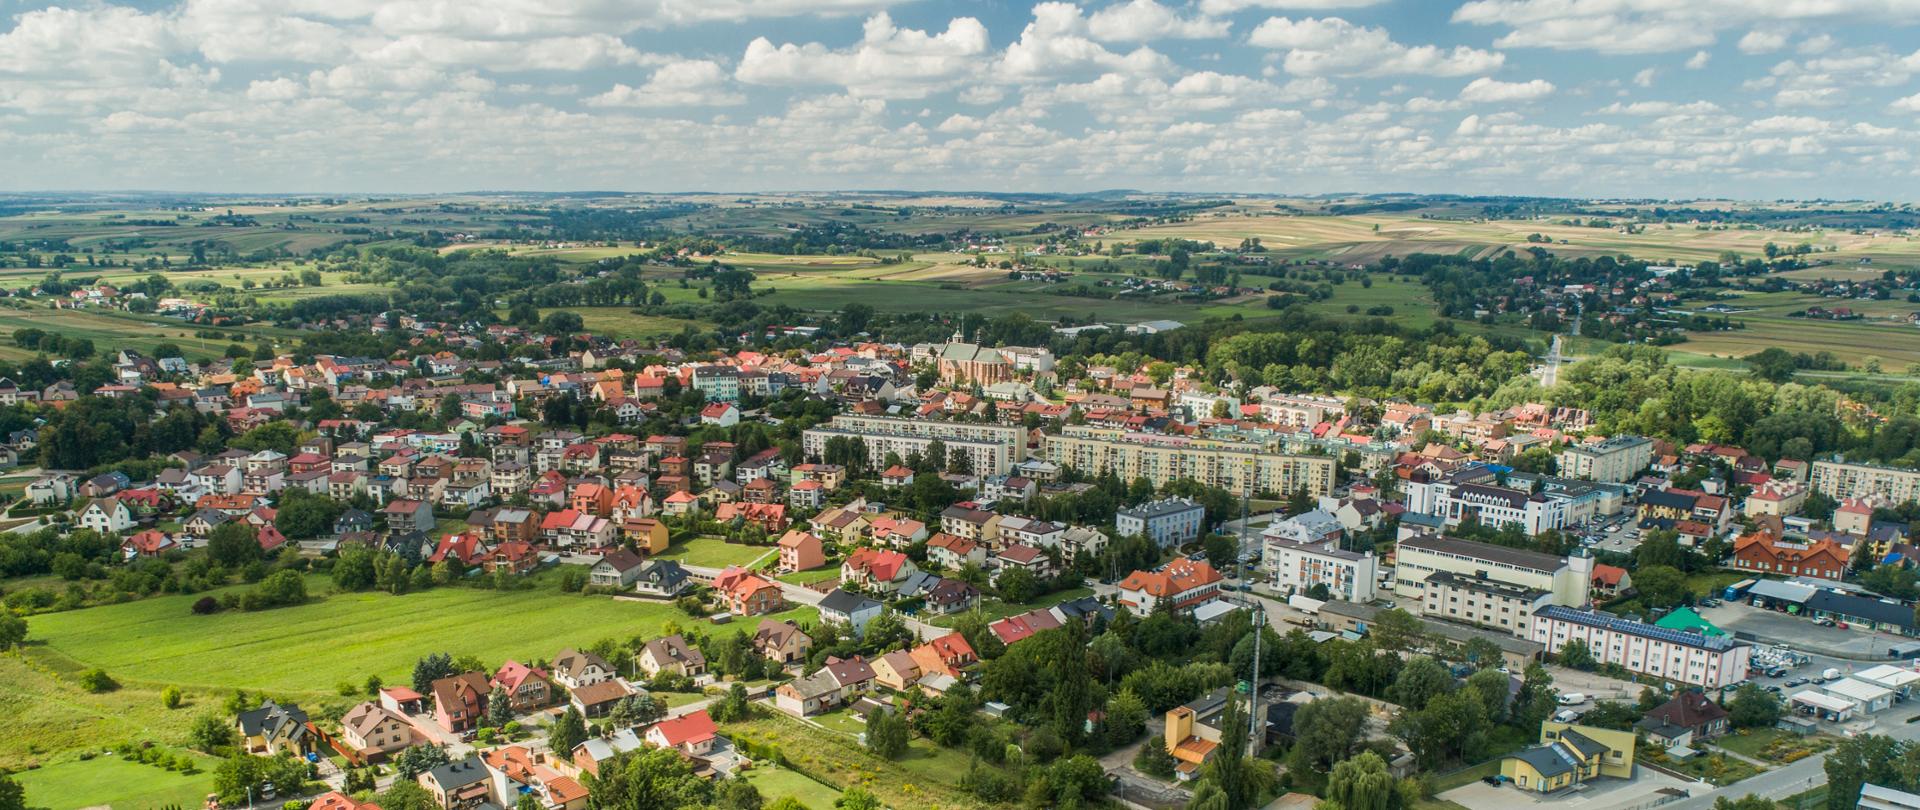 Zdjęcie przedstawia budynki miasta Proszowice z lotu ptaka, w oddali tereny rolnicze Powiatu Proszowickiego.